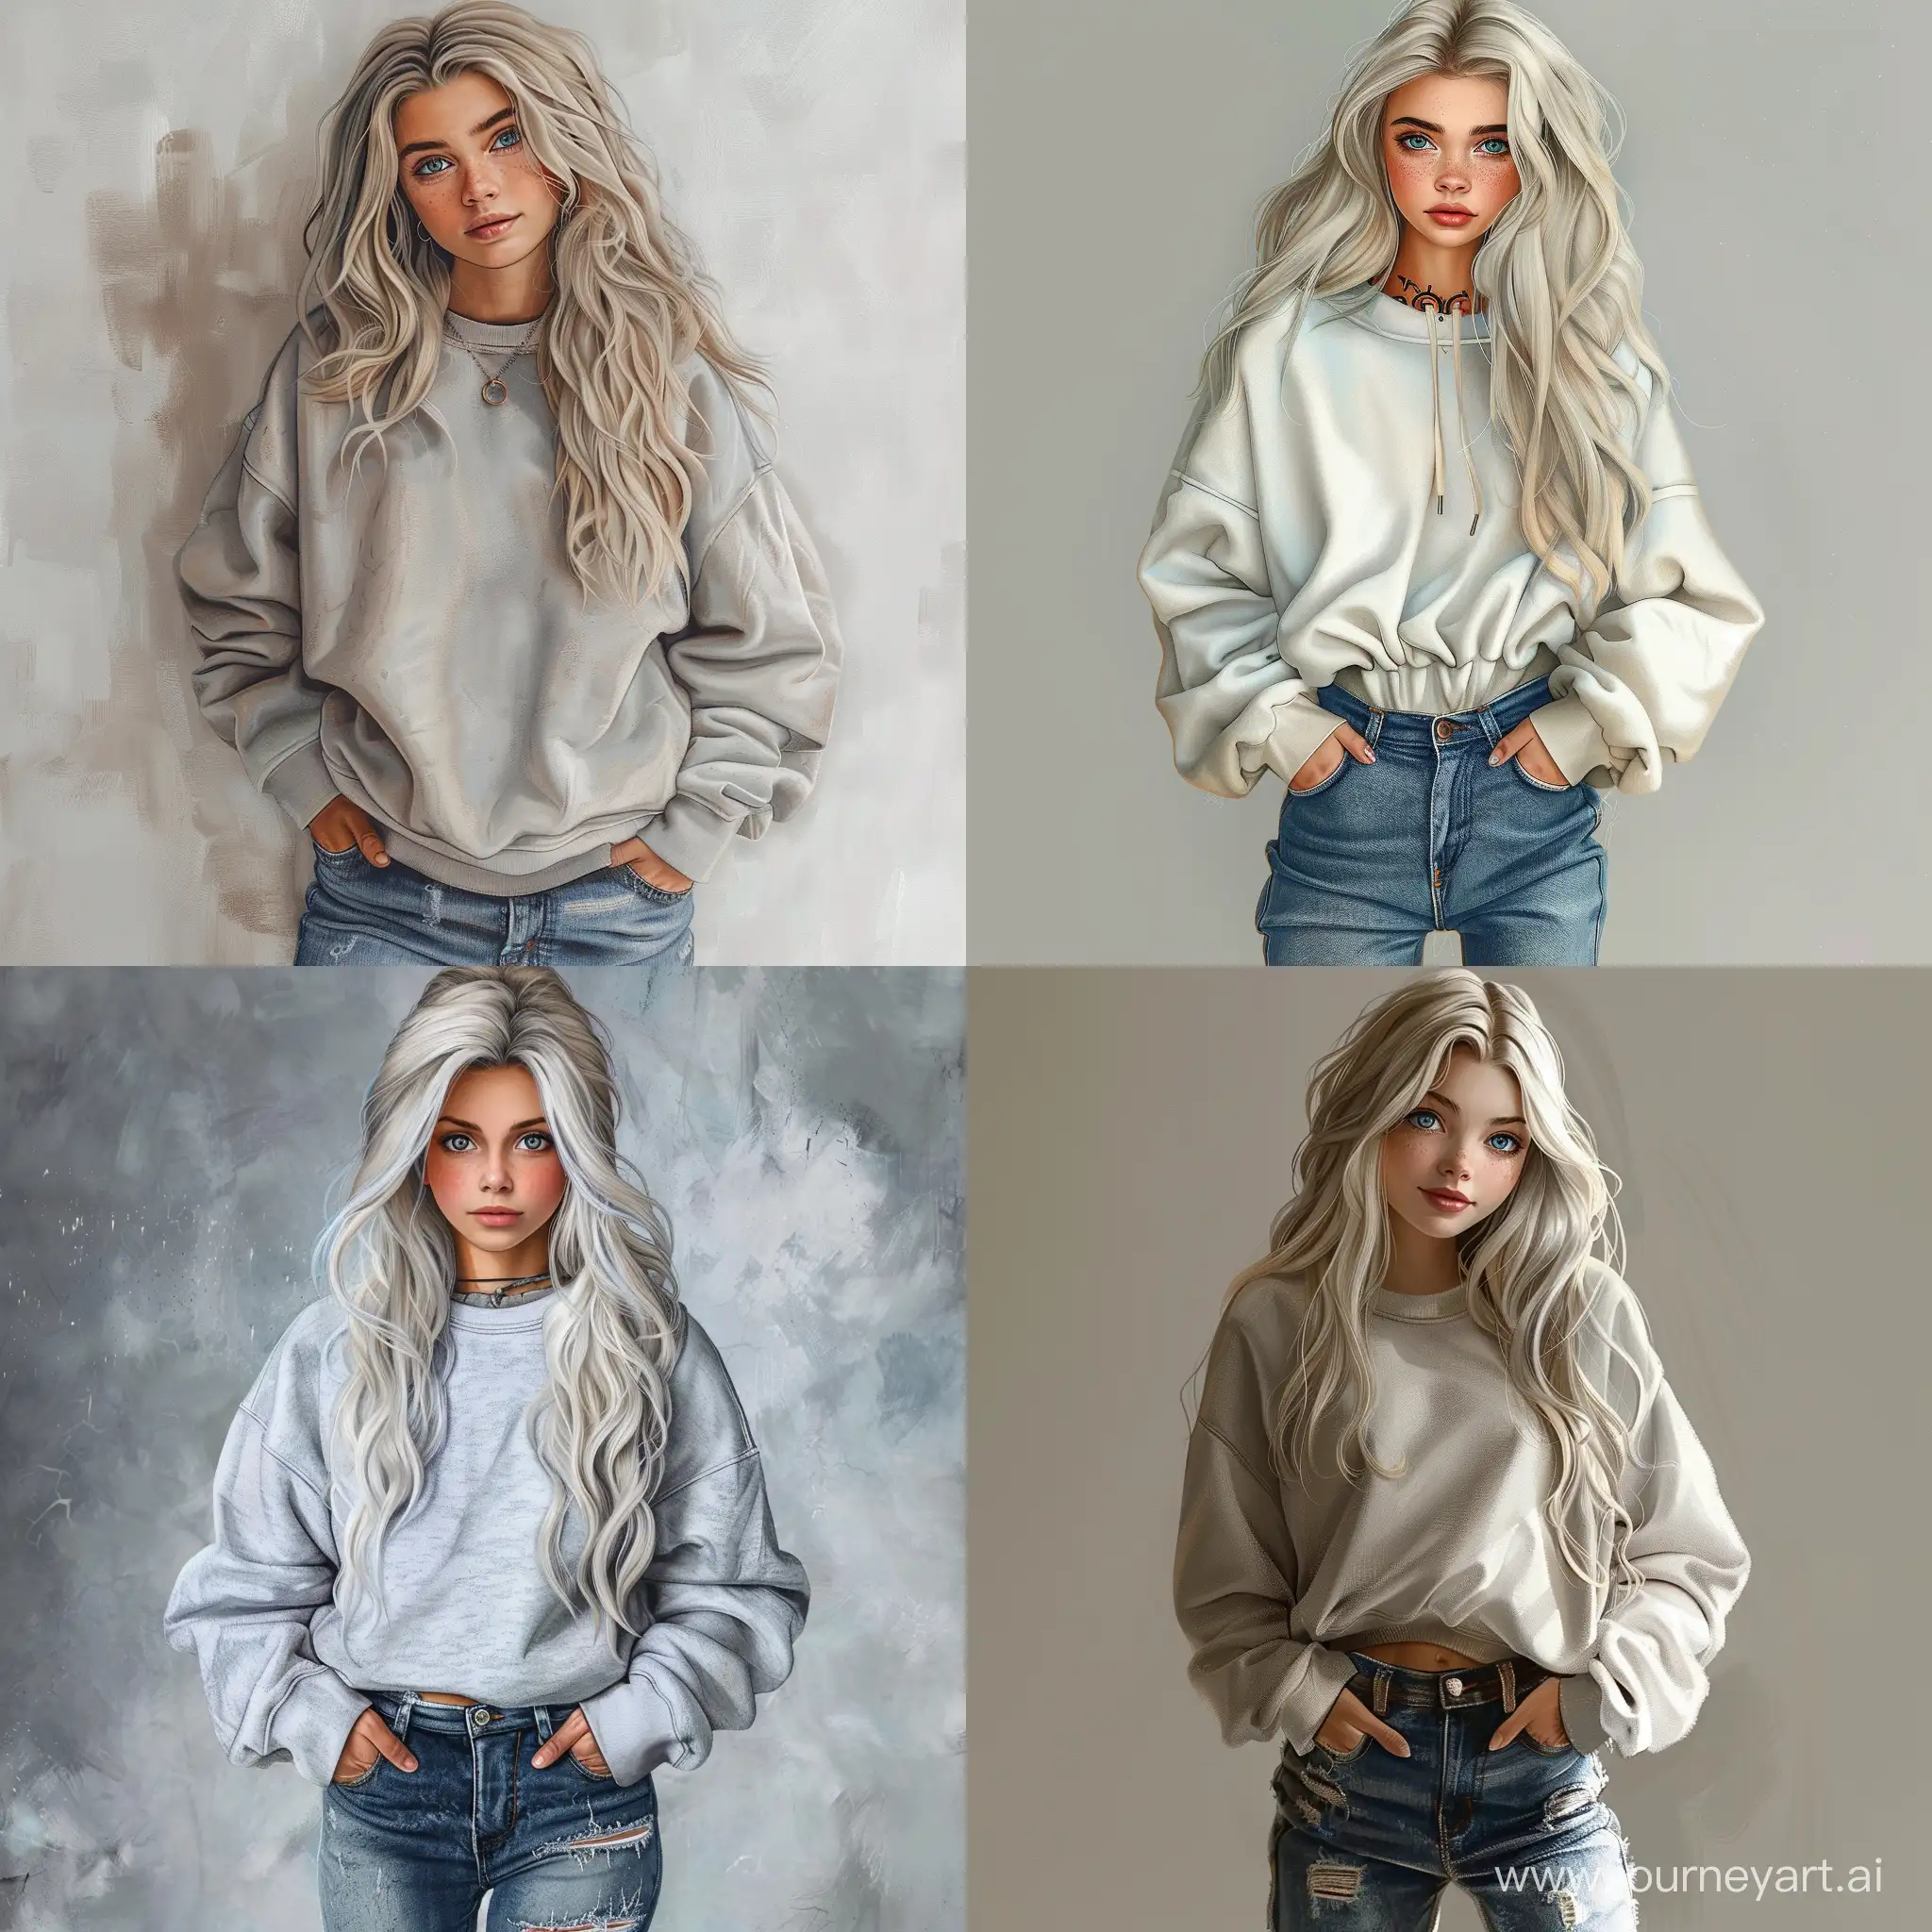 Stylish-Teenage-Girl-in-Oversized-Sweatshirt-and-Jeans